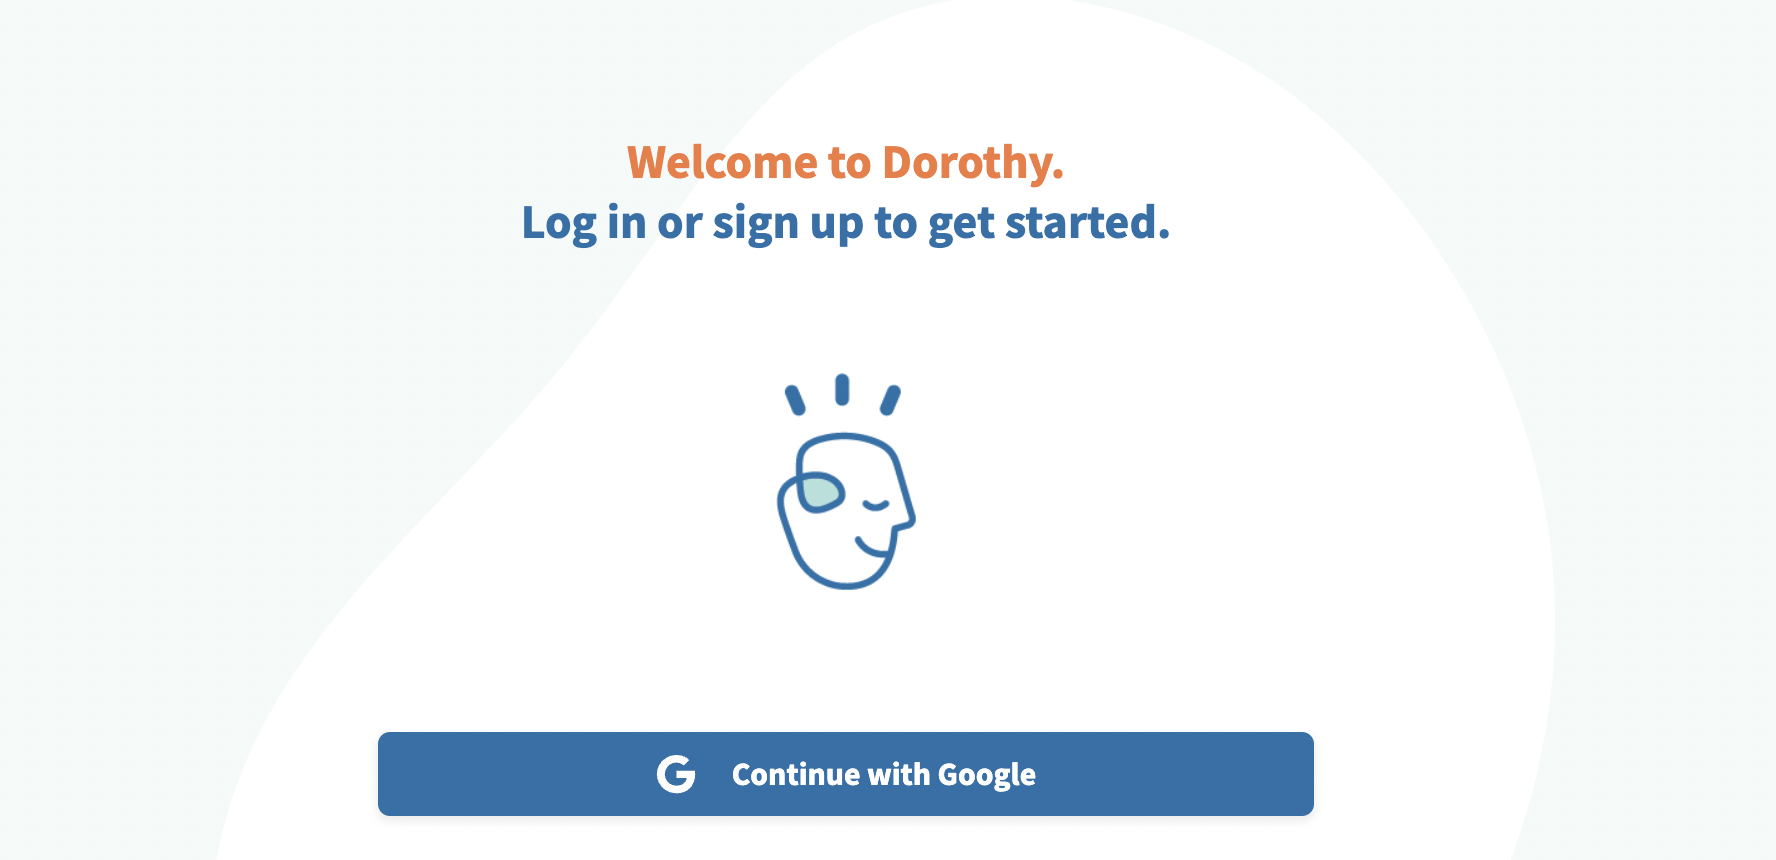 Memory Learning App: Dorothy